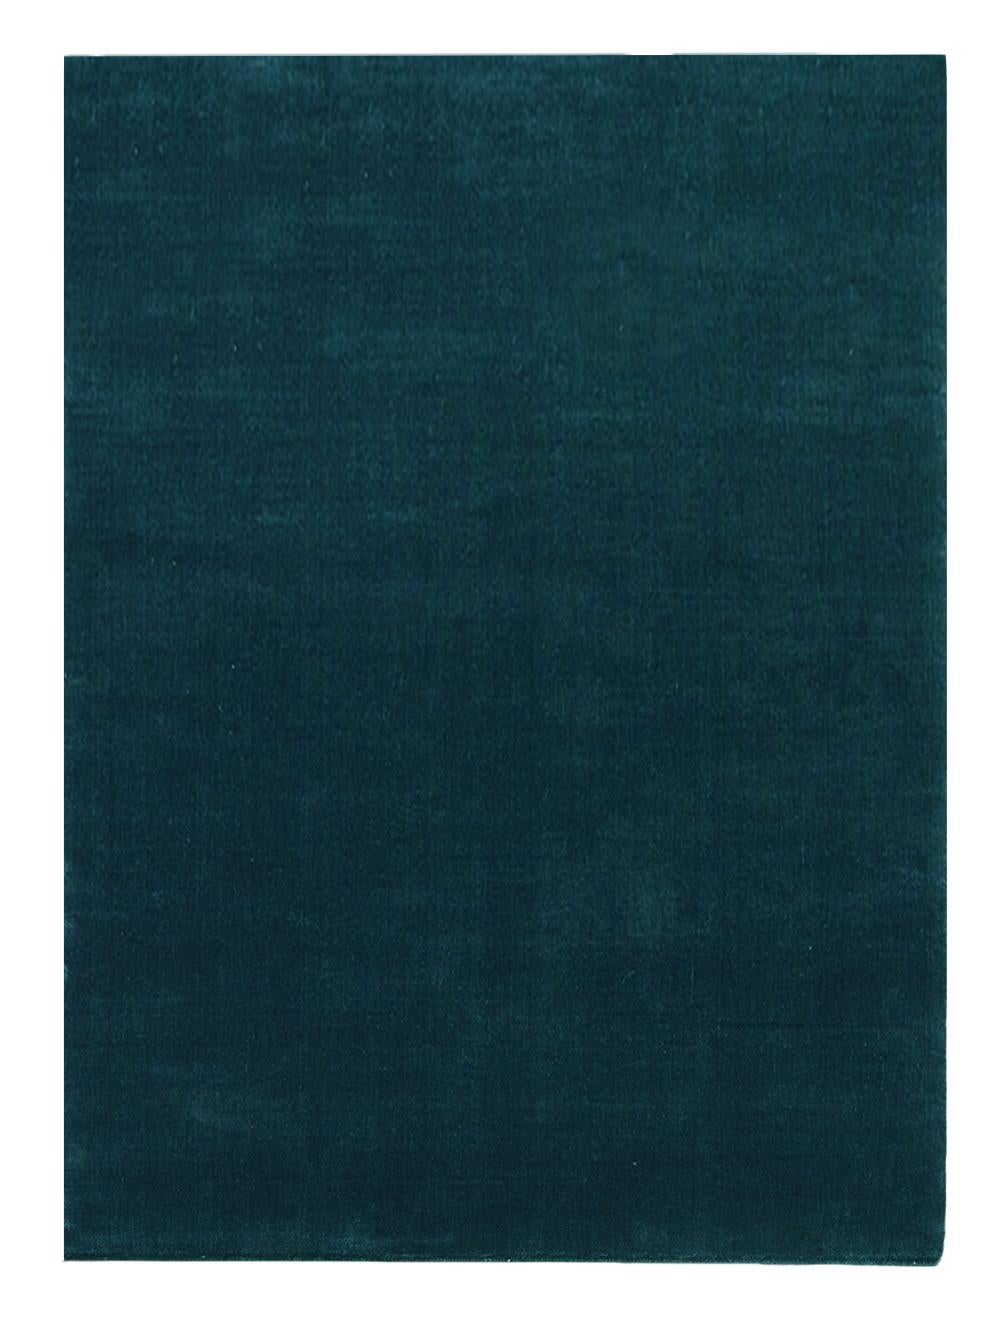 Sea Green Earth Teppich von Massimo Copenhagen
Handgewebt
MATERIALIEN: 100% Neuseelandwolle
Abmessungen: B 300 x H 400 cm
Verfügbare Farben: Verte Grey, Moss Green, Blush, Sea Green, und Charcoal.
Andere Abmessungen sind möglich: 140x200 cm, 170x240